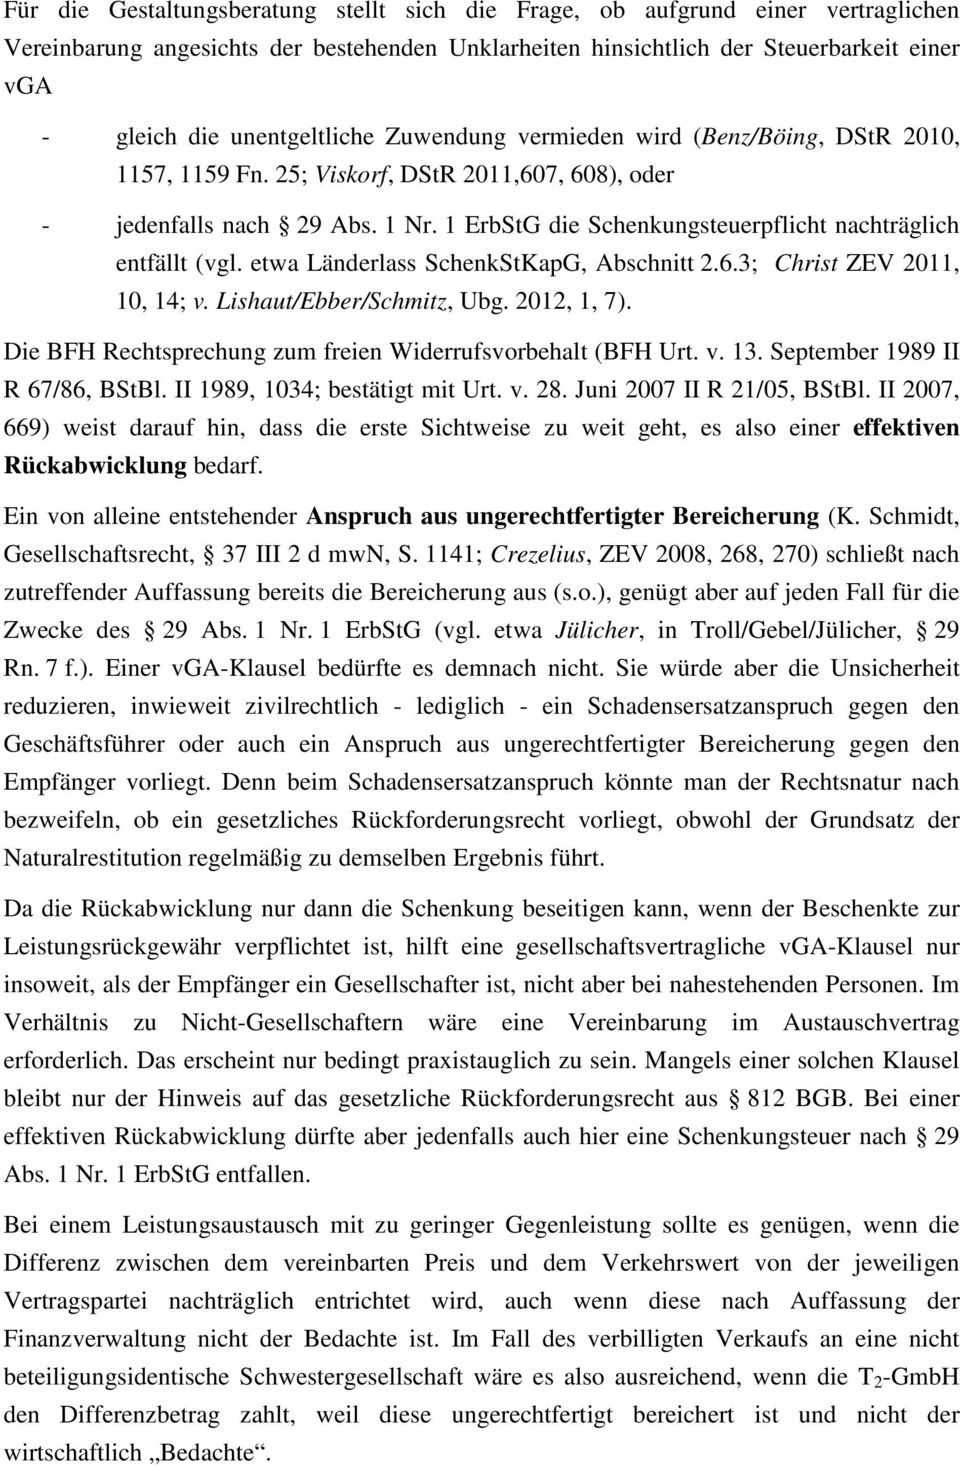 1 ErbStG die Schenkungsteuerpflicht nachträglich entfällt (vgl. etwa Länderlass SchenkStKapG, Abschnitt 2.6.3; Christ ZEV 2011, 10, 14; v. Lishaut/Ebber/Schmitz, Ubg. 2012, 1, 7).